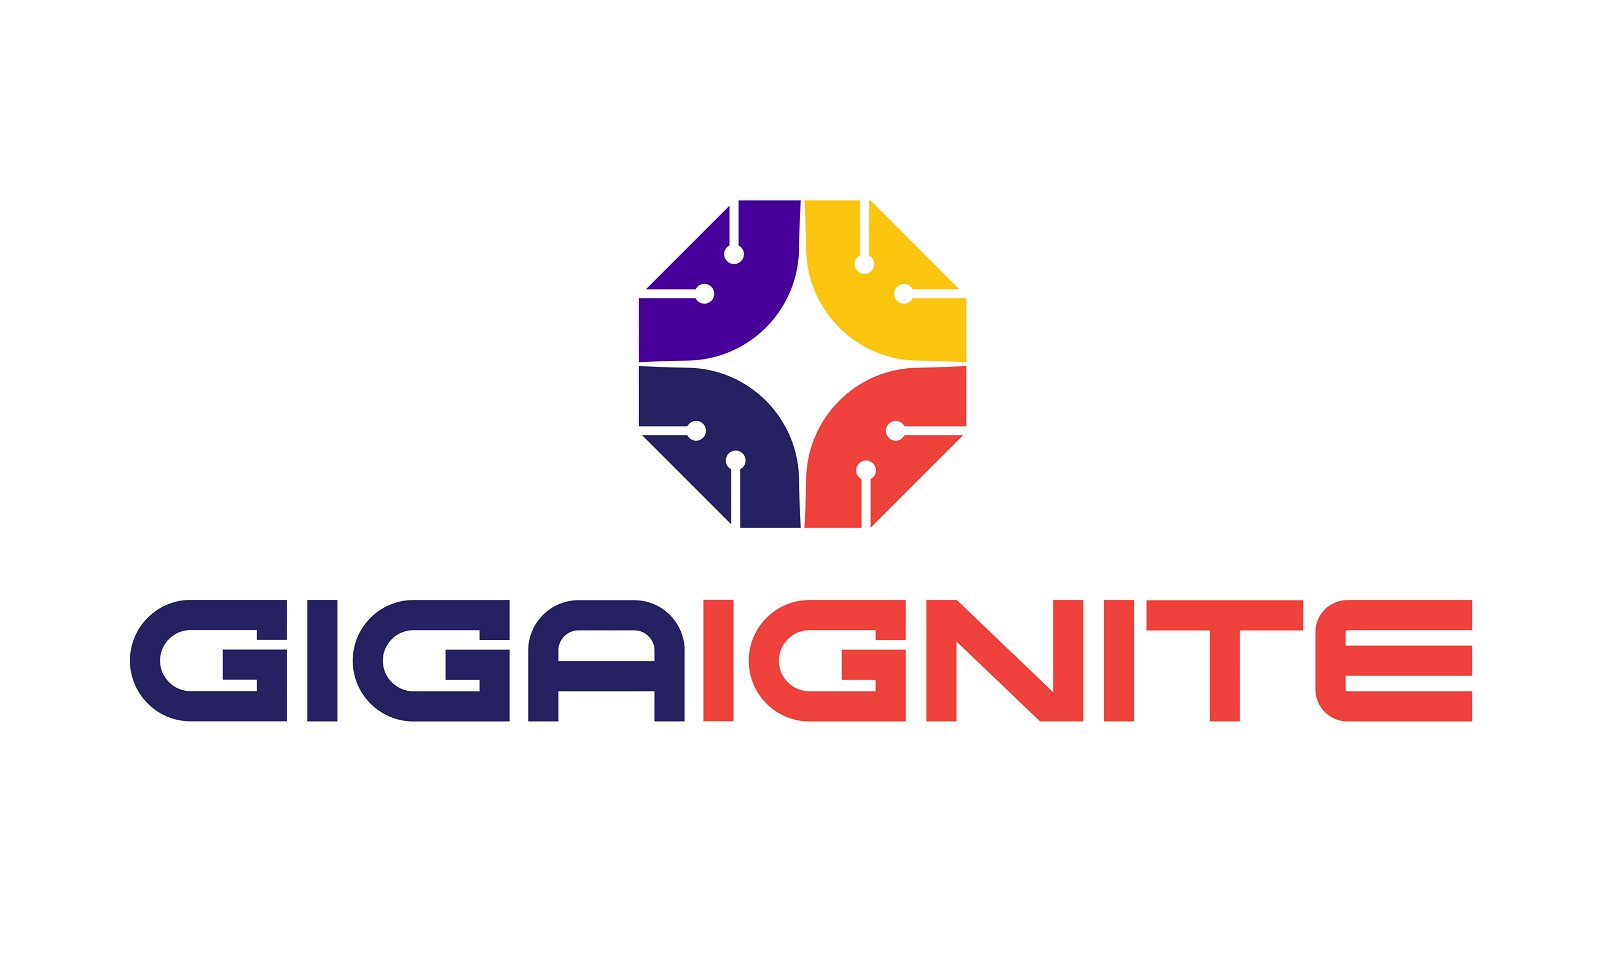 GigaIgnite.com - Creative brandable domain for sale